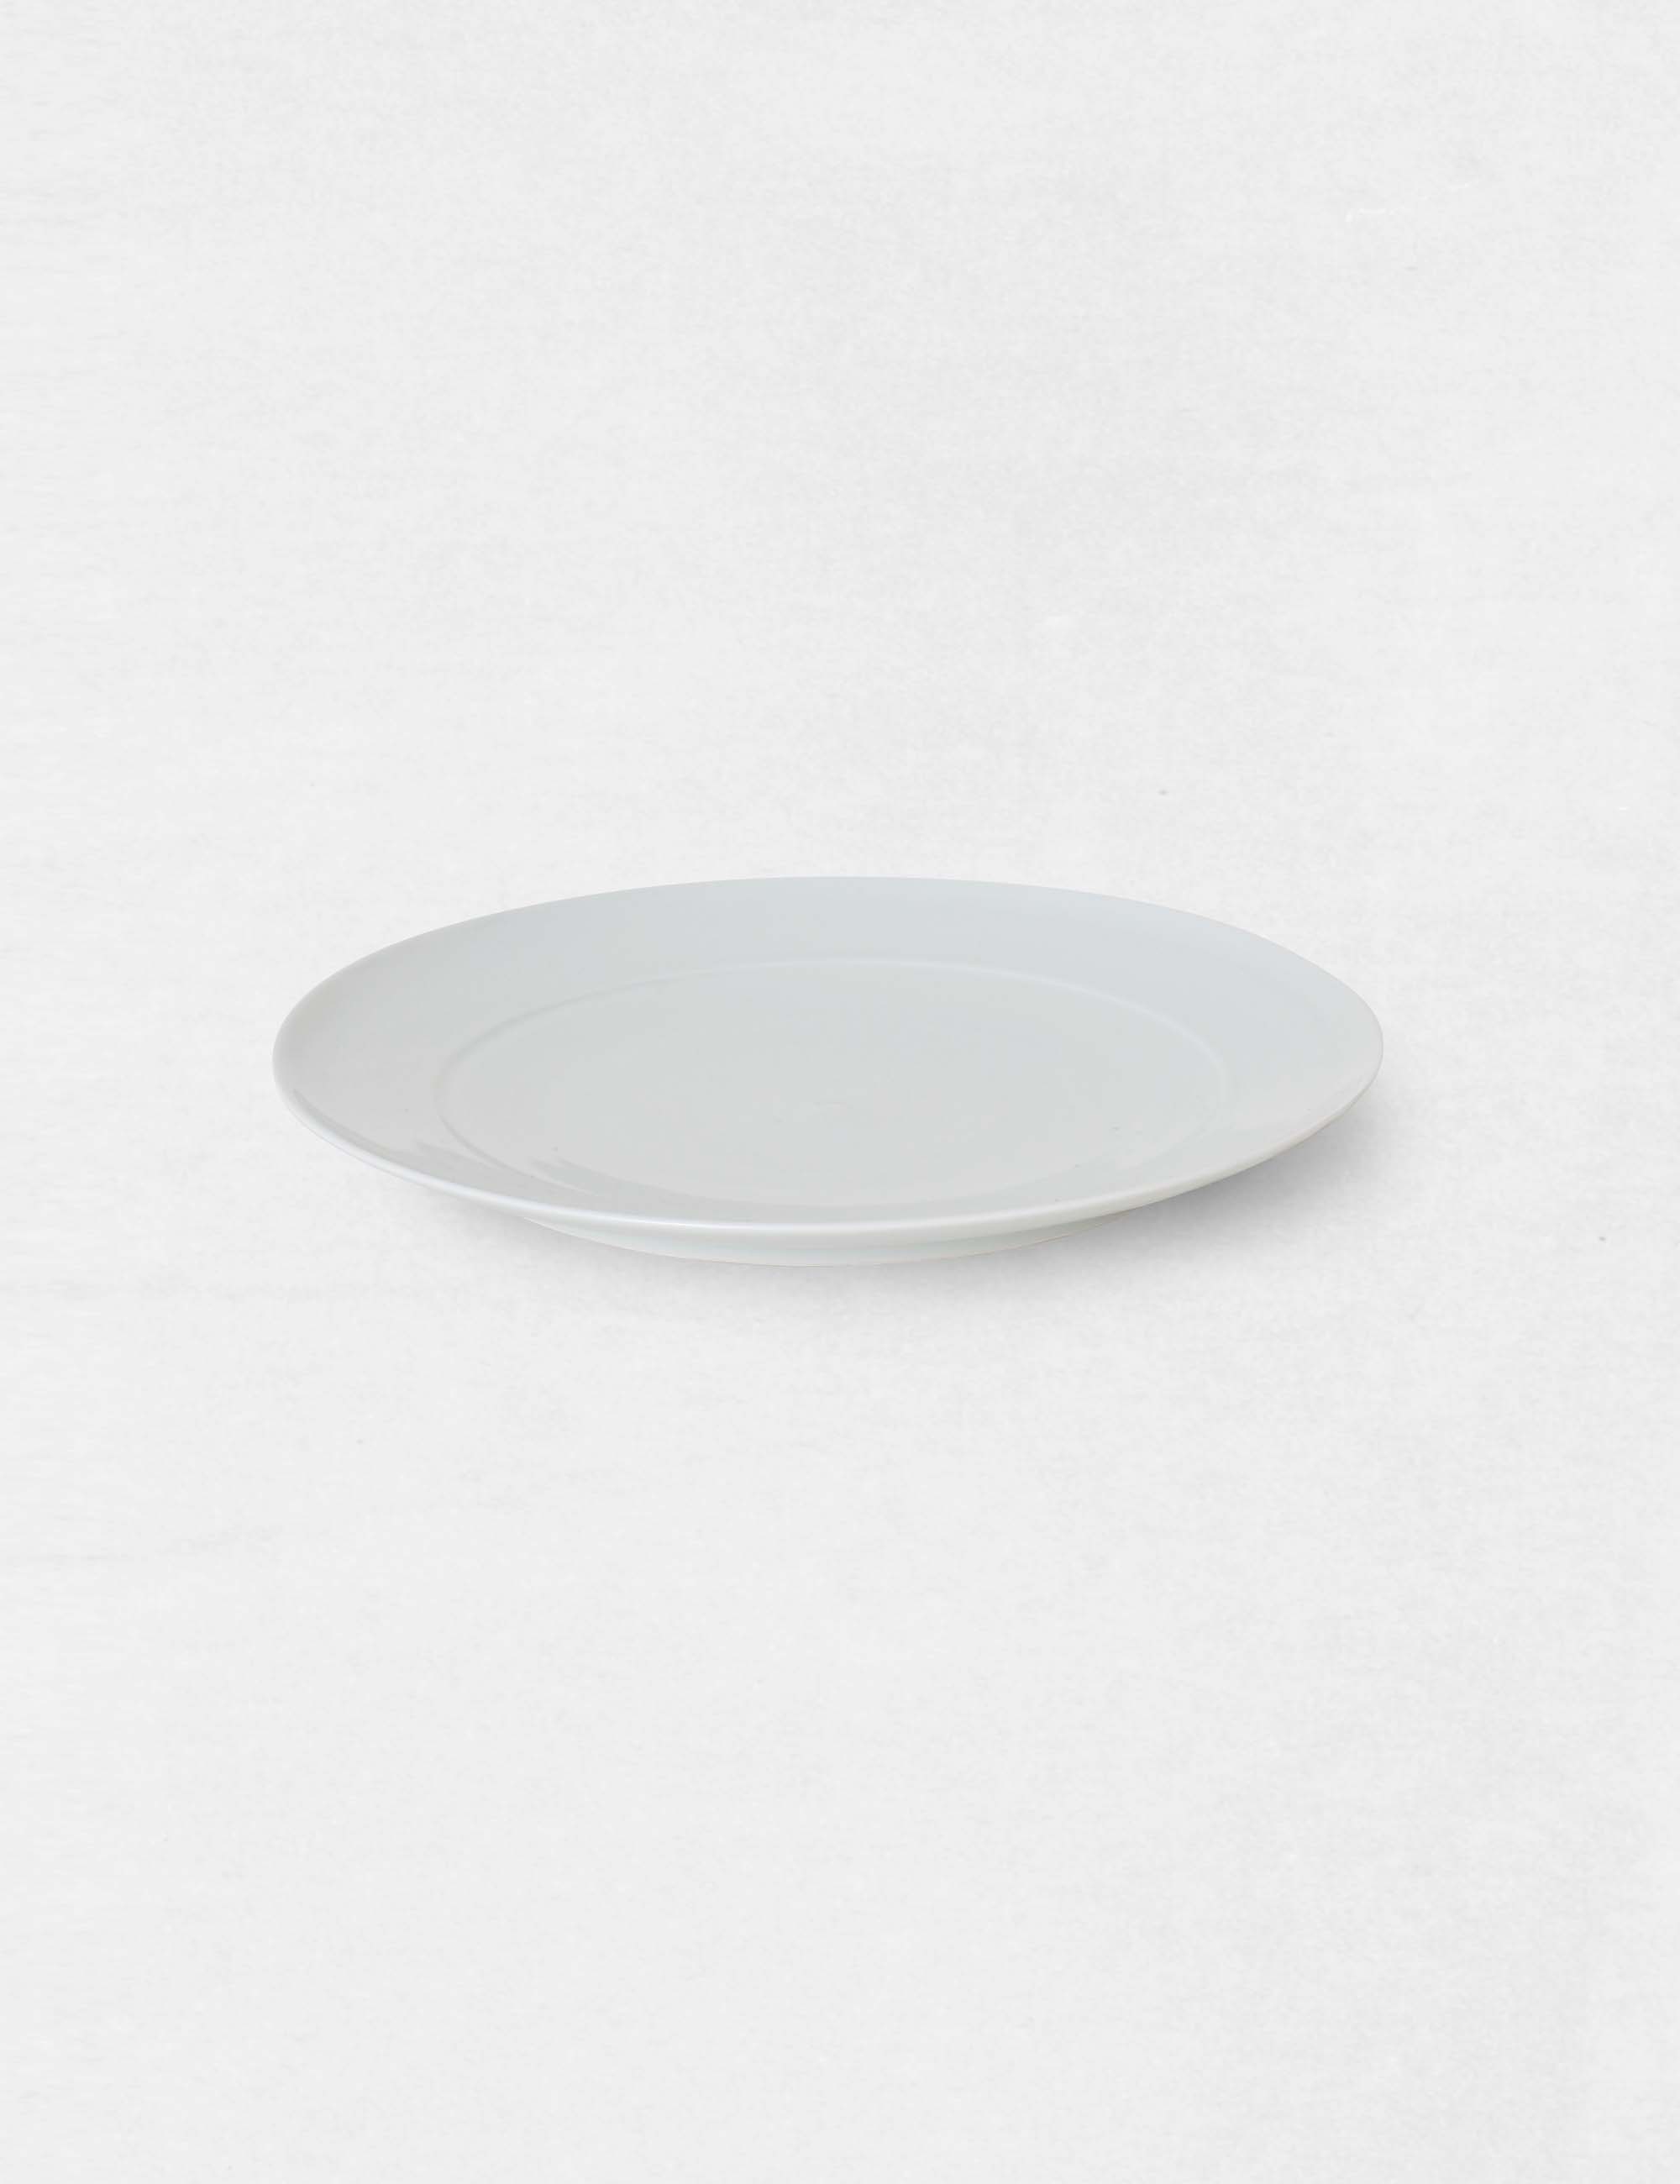 白磁 瑠璃磁の大皿 / ババグーリ